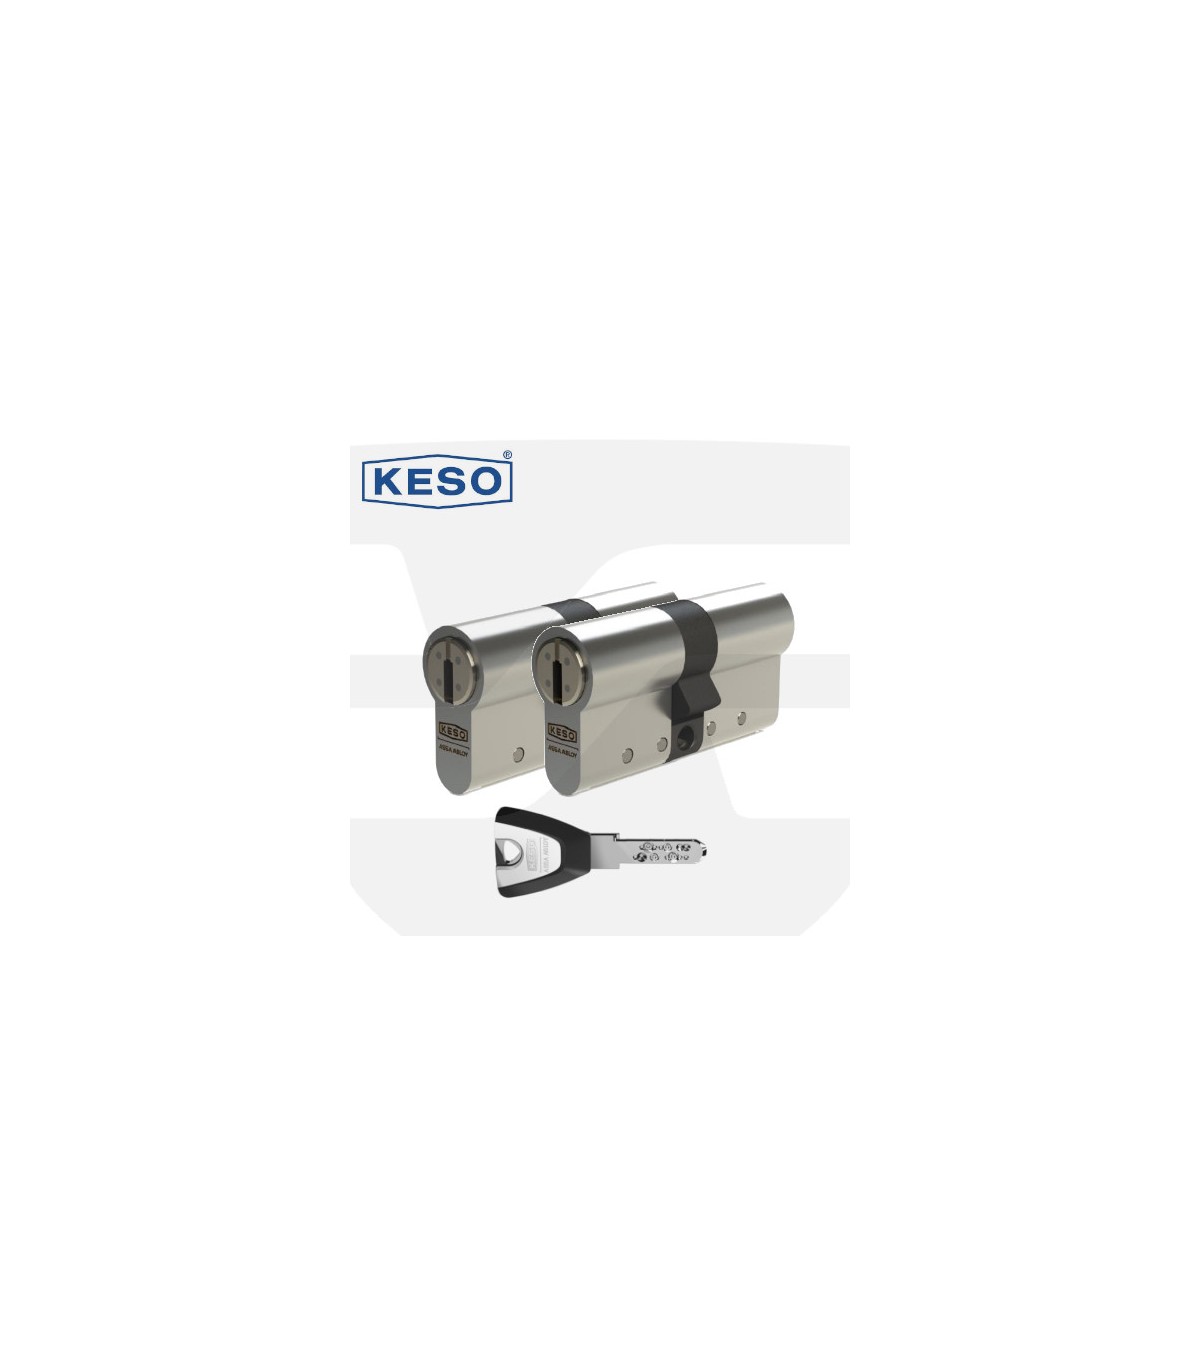 Toda la flexibilidad en una llave KESO 8000 Ω2 - Euroiberia